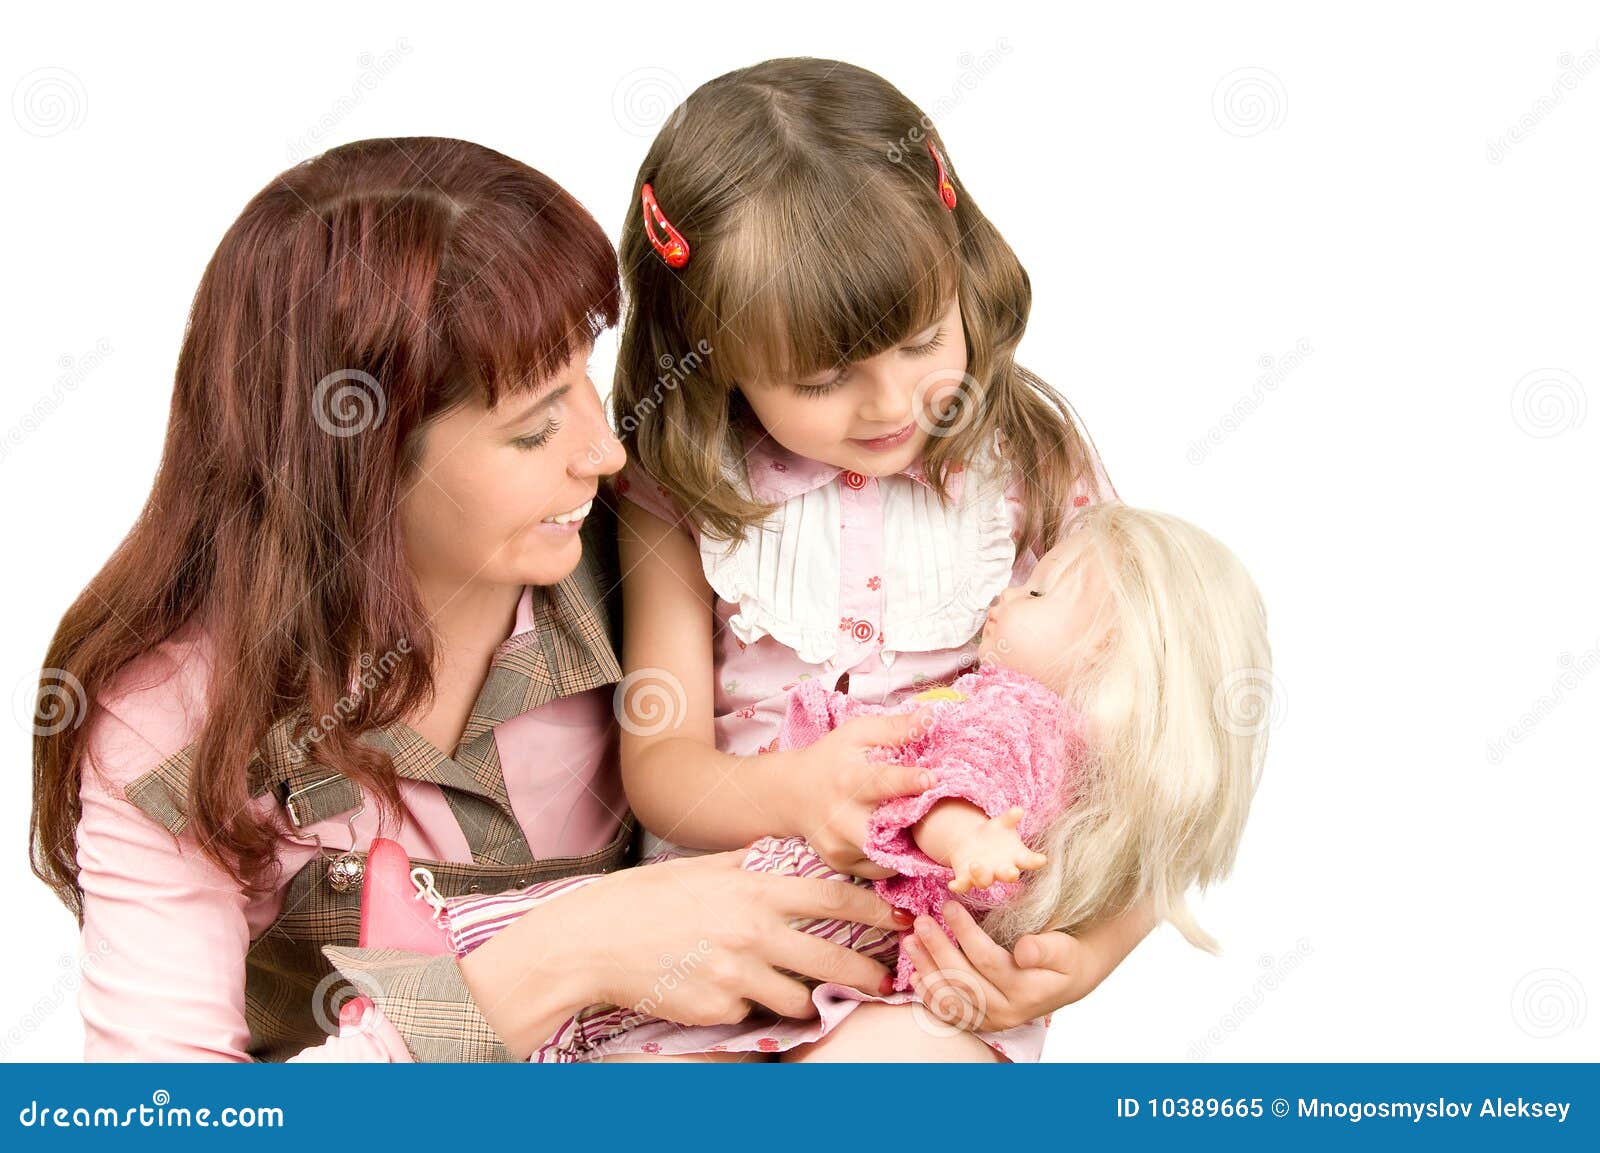 Отдала дочку маме. Куклы для девочек. Мама и дочка. Девочка с мамой. Мама с дочкой играют в куклы.